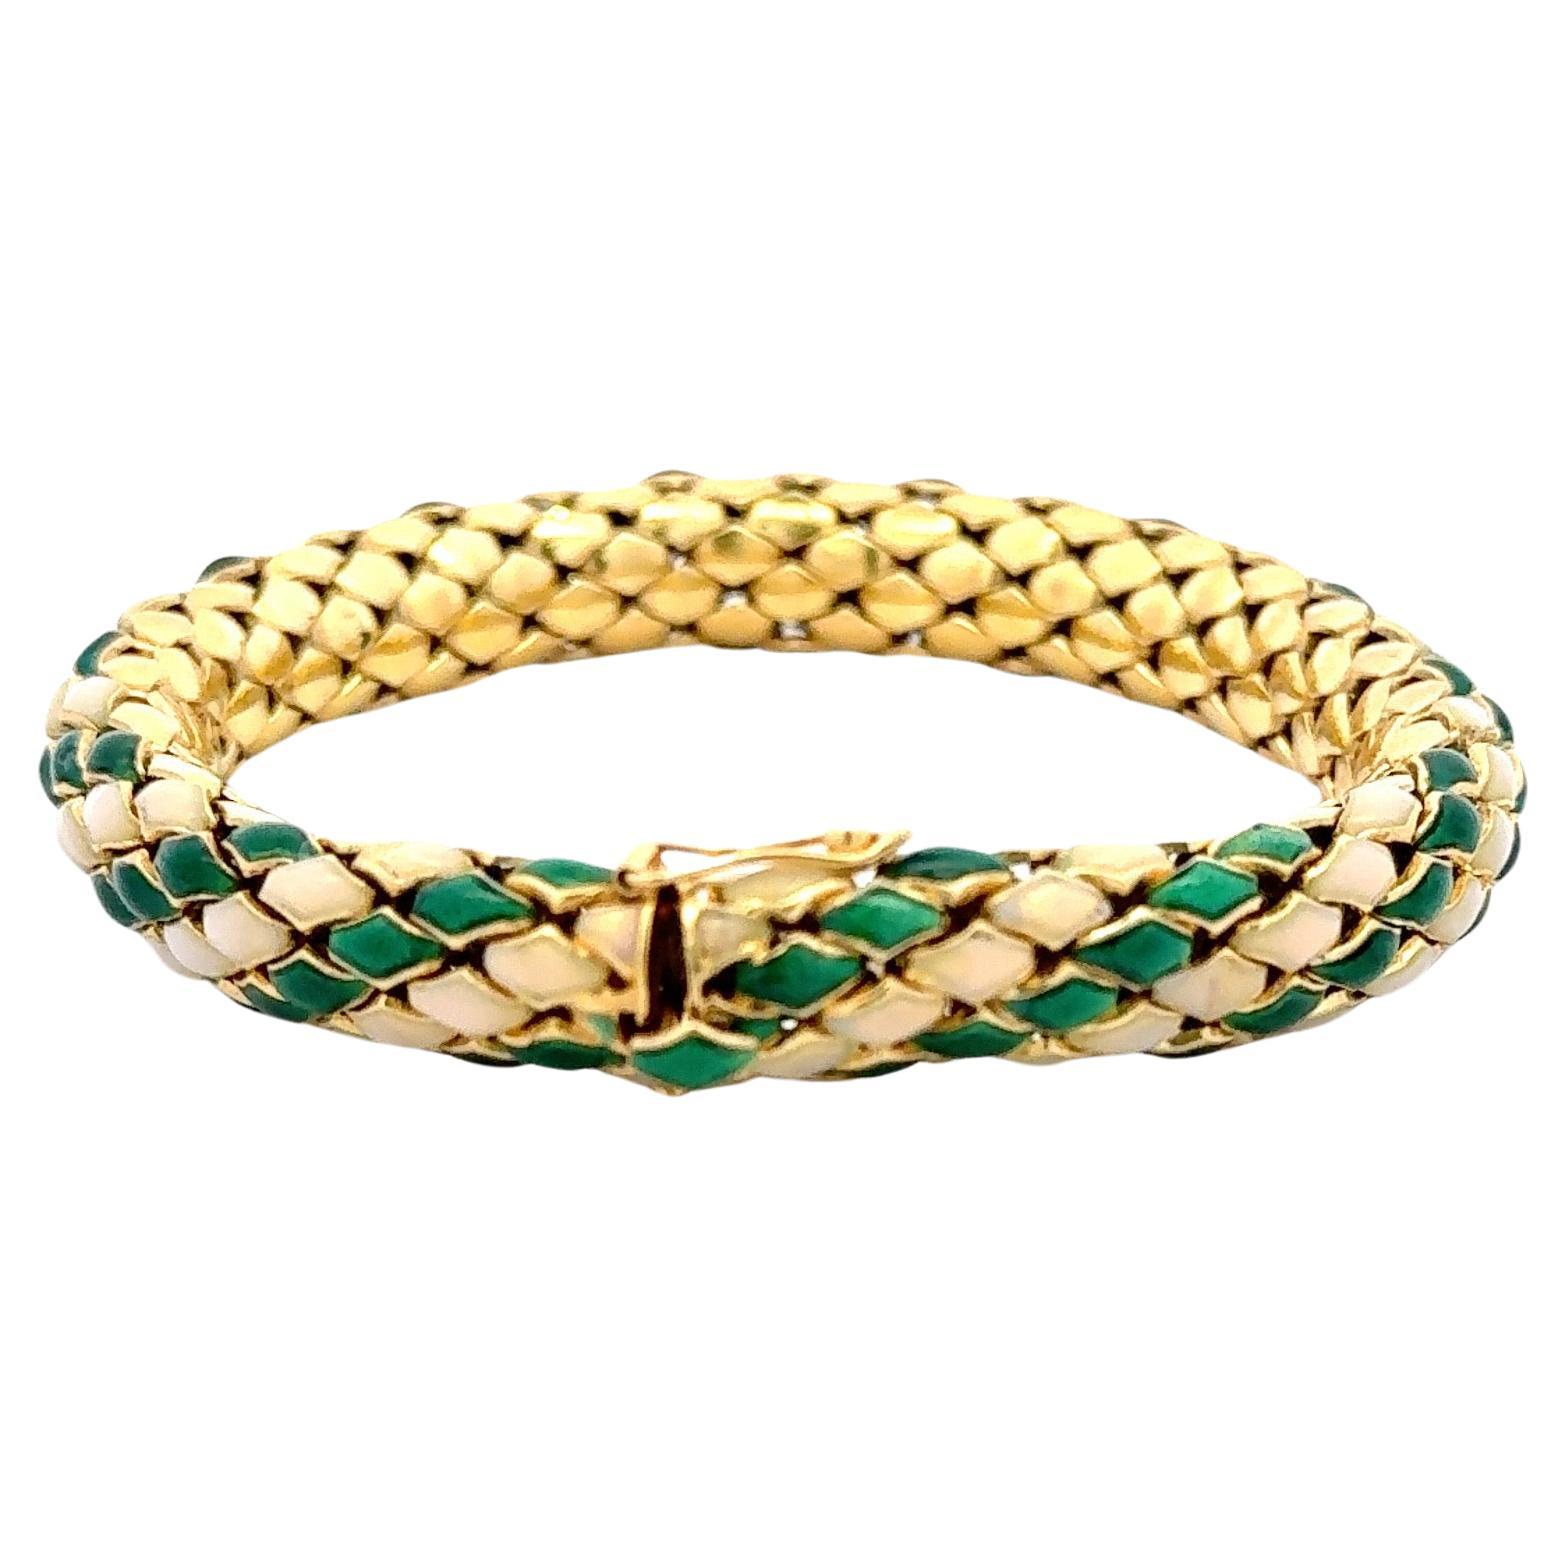 Vintage 18 karat yellow gold snake motif bracelet featuring green and cream enamel weighing 55.9 grams. 
